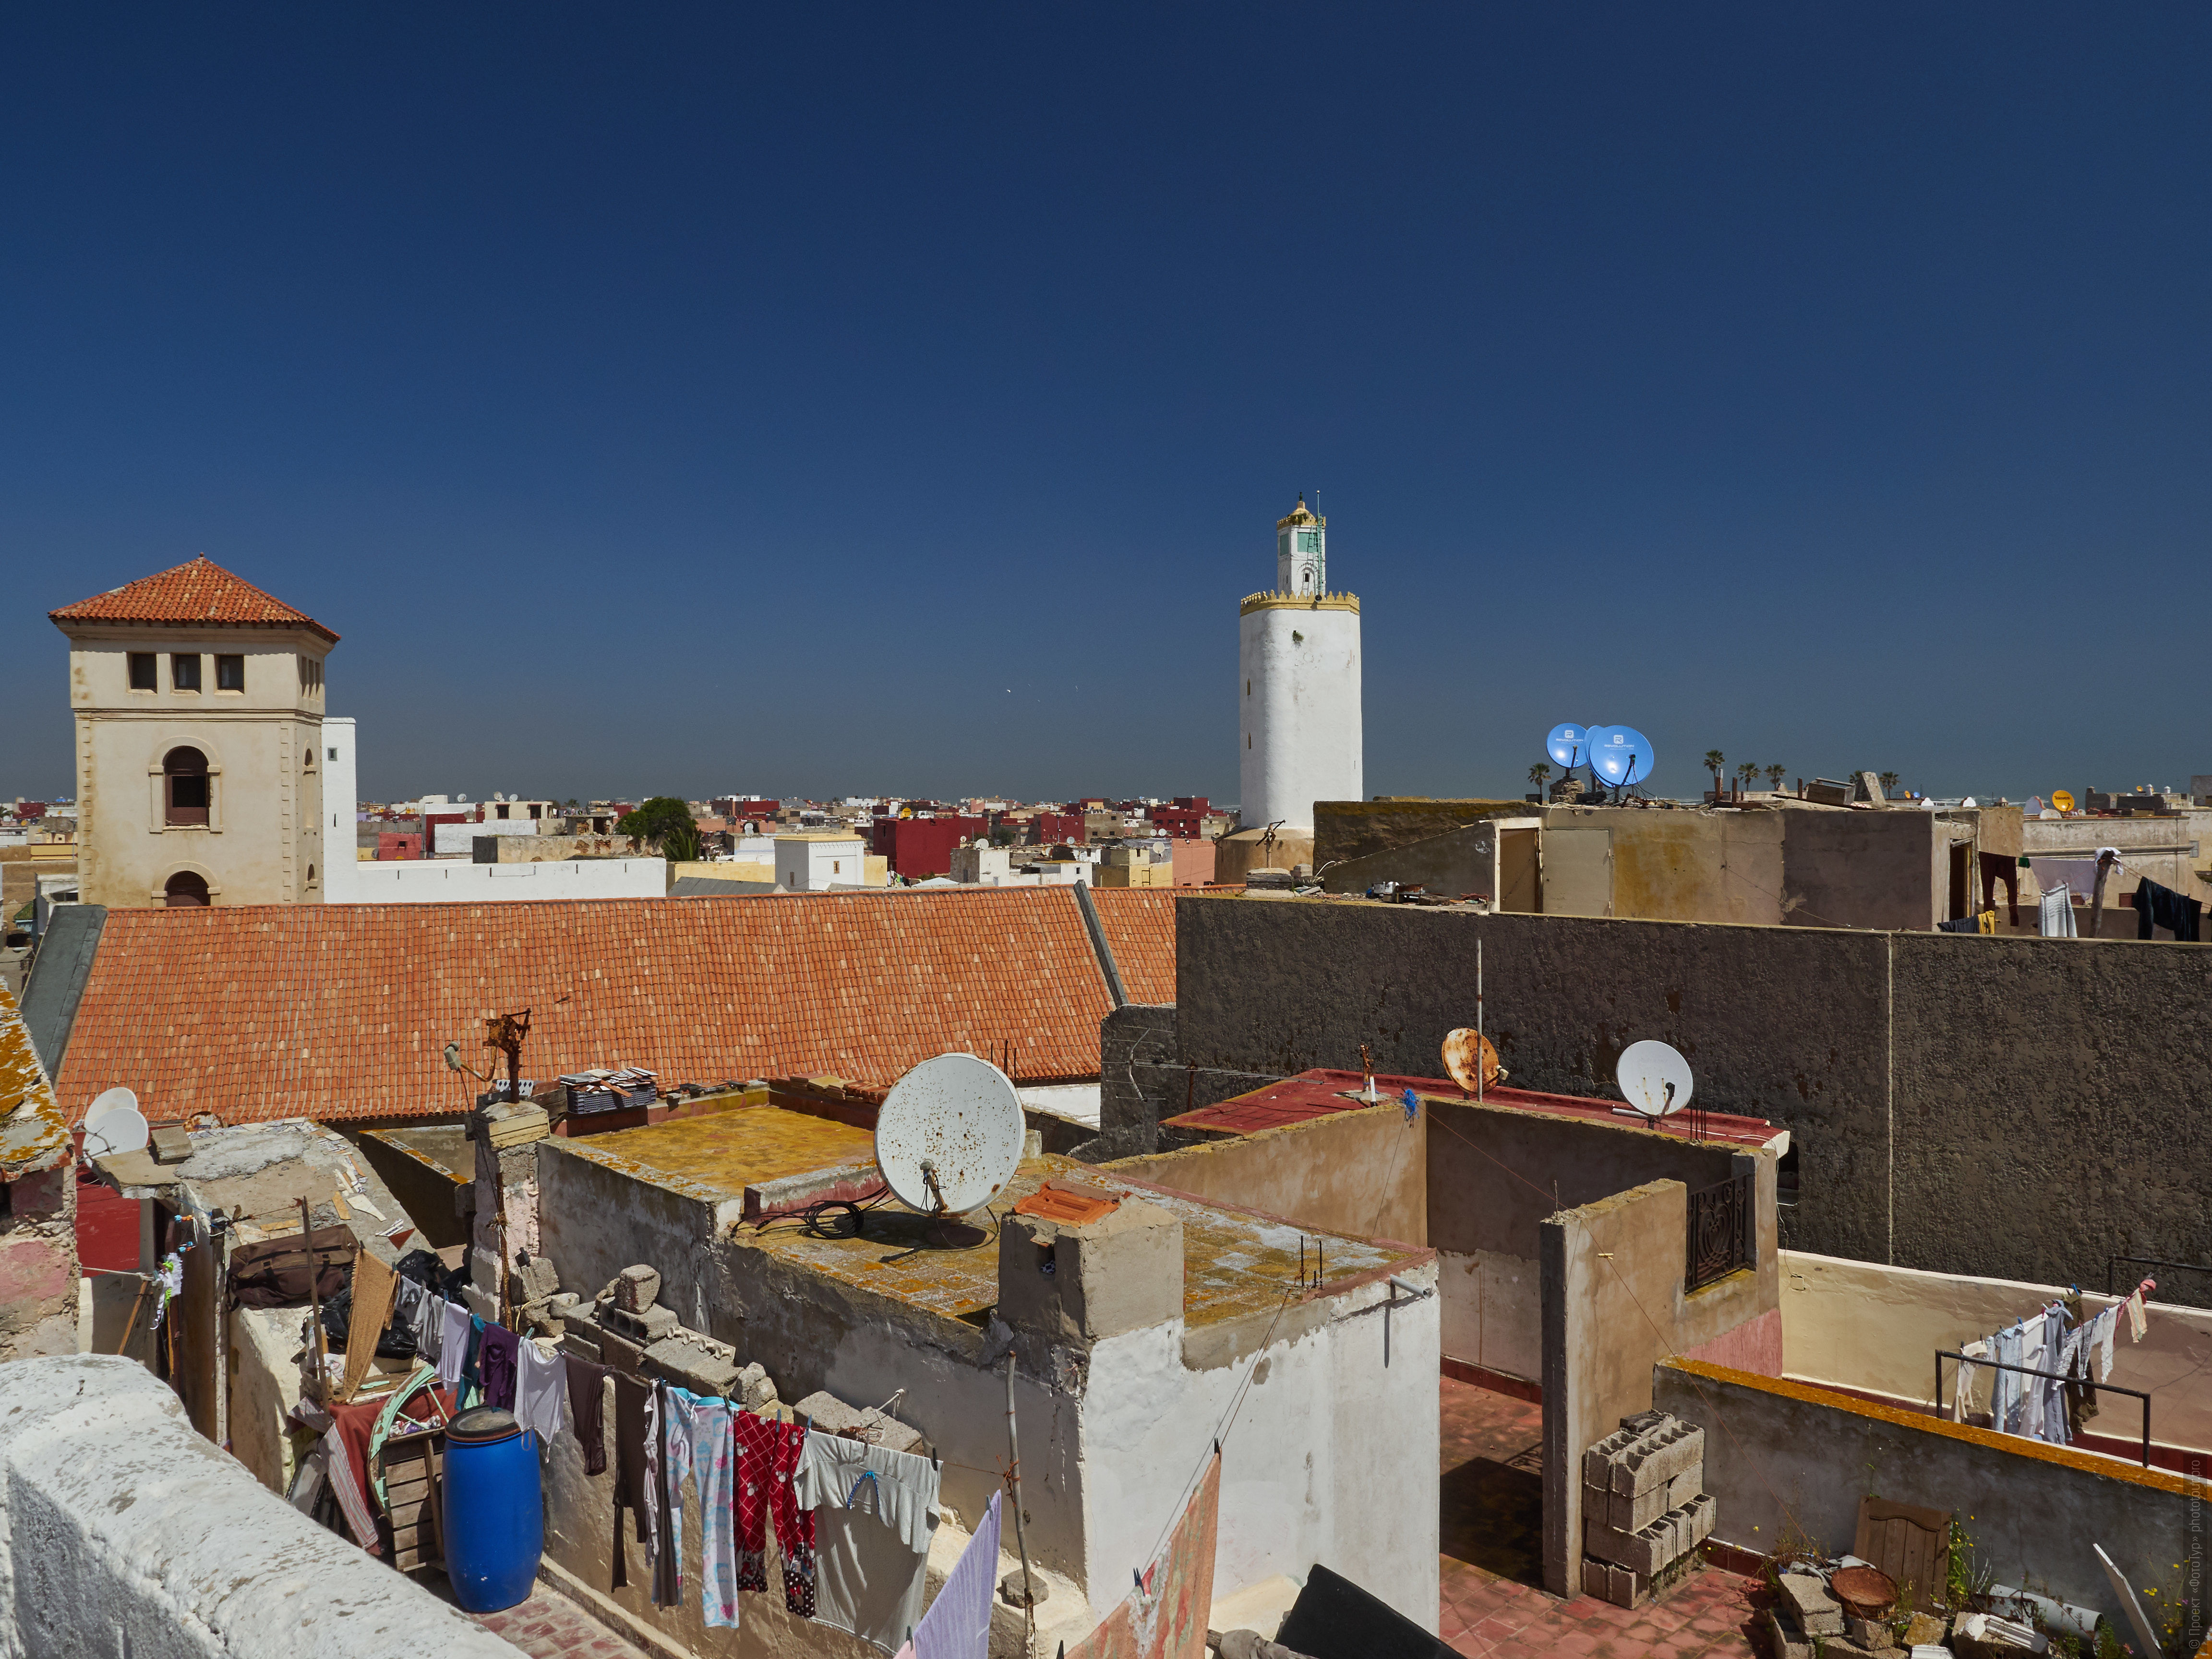 Португальская медина Эль-Джадида. Фототур в Марокко: медины и порты Марокко, 7 ноября - 18 ноября 2021 года.